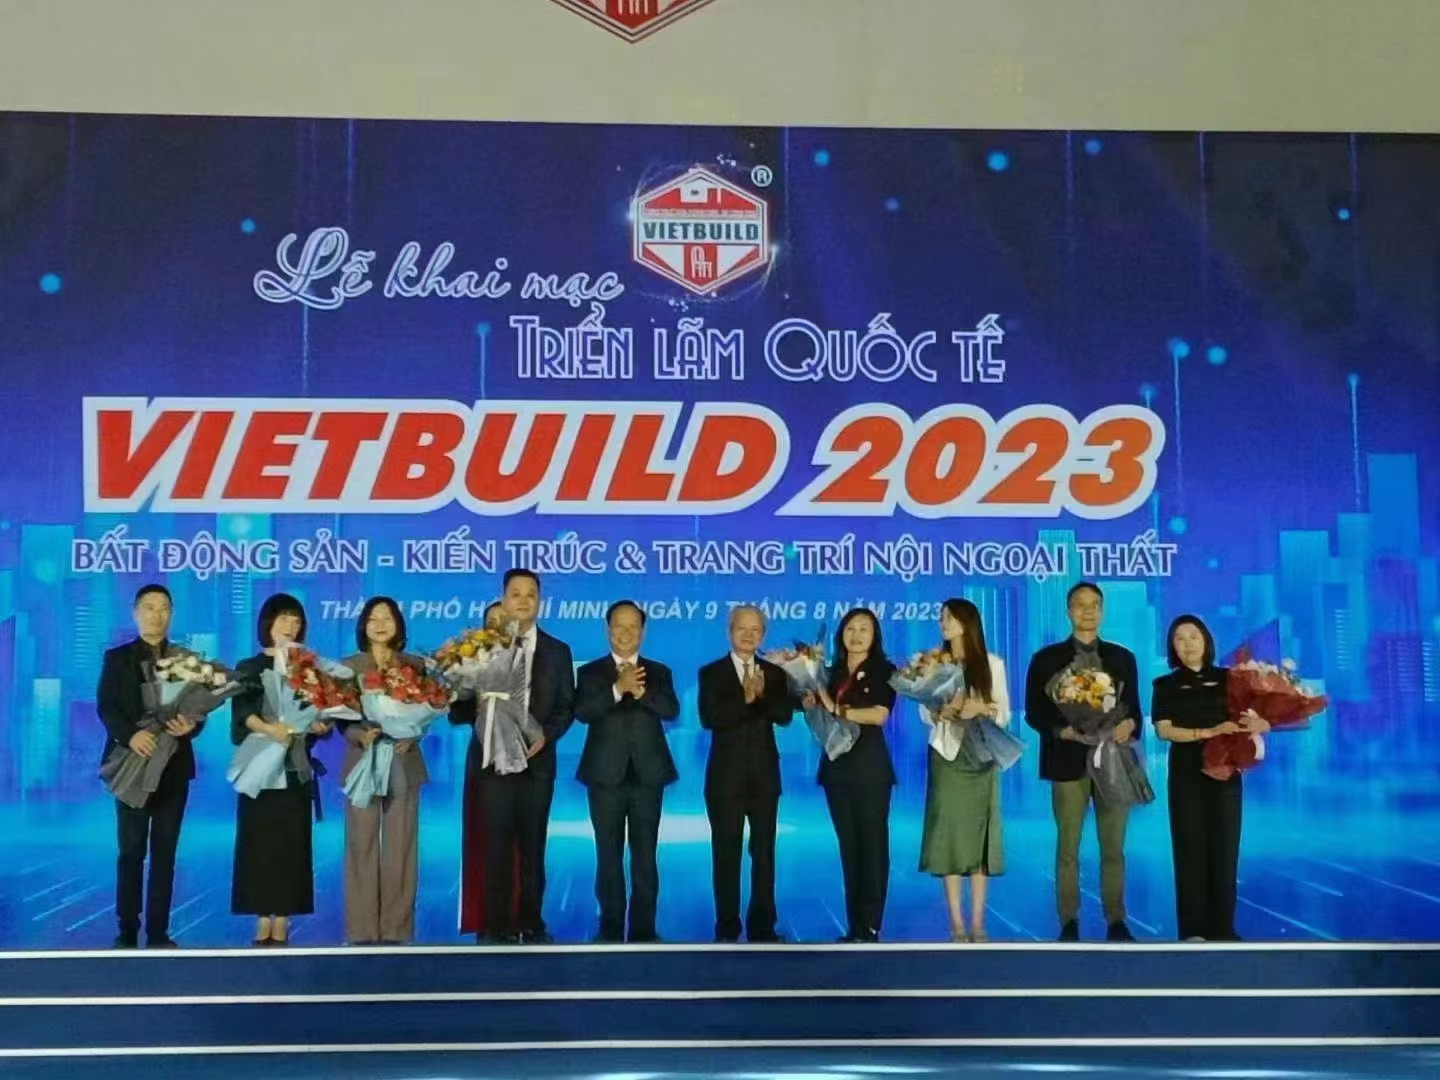 Teknolojia ya Aulu Inang'aa kwenye Vietbuild 2023 Vietnam